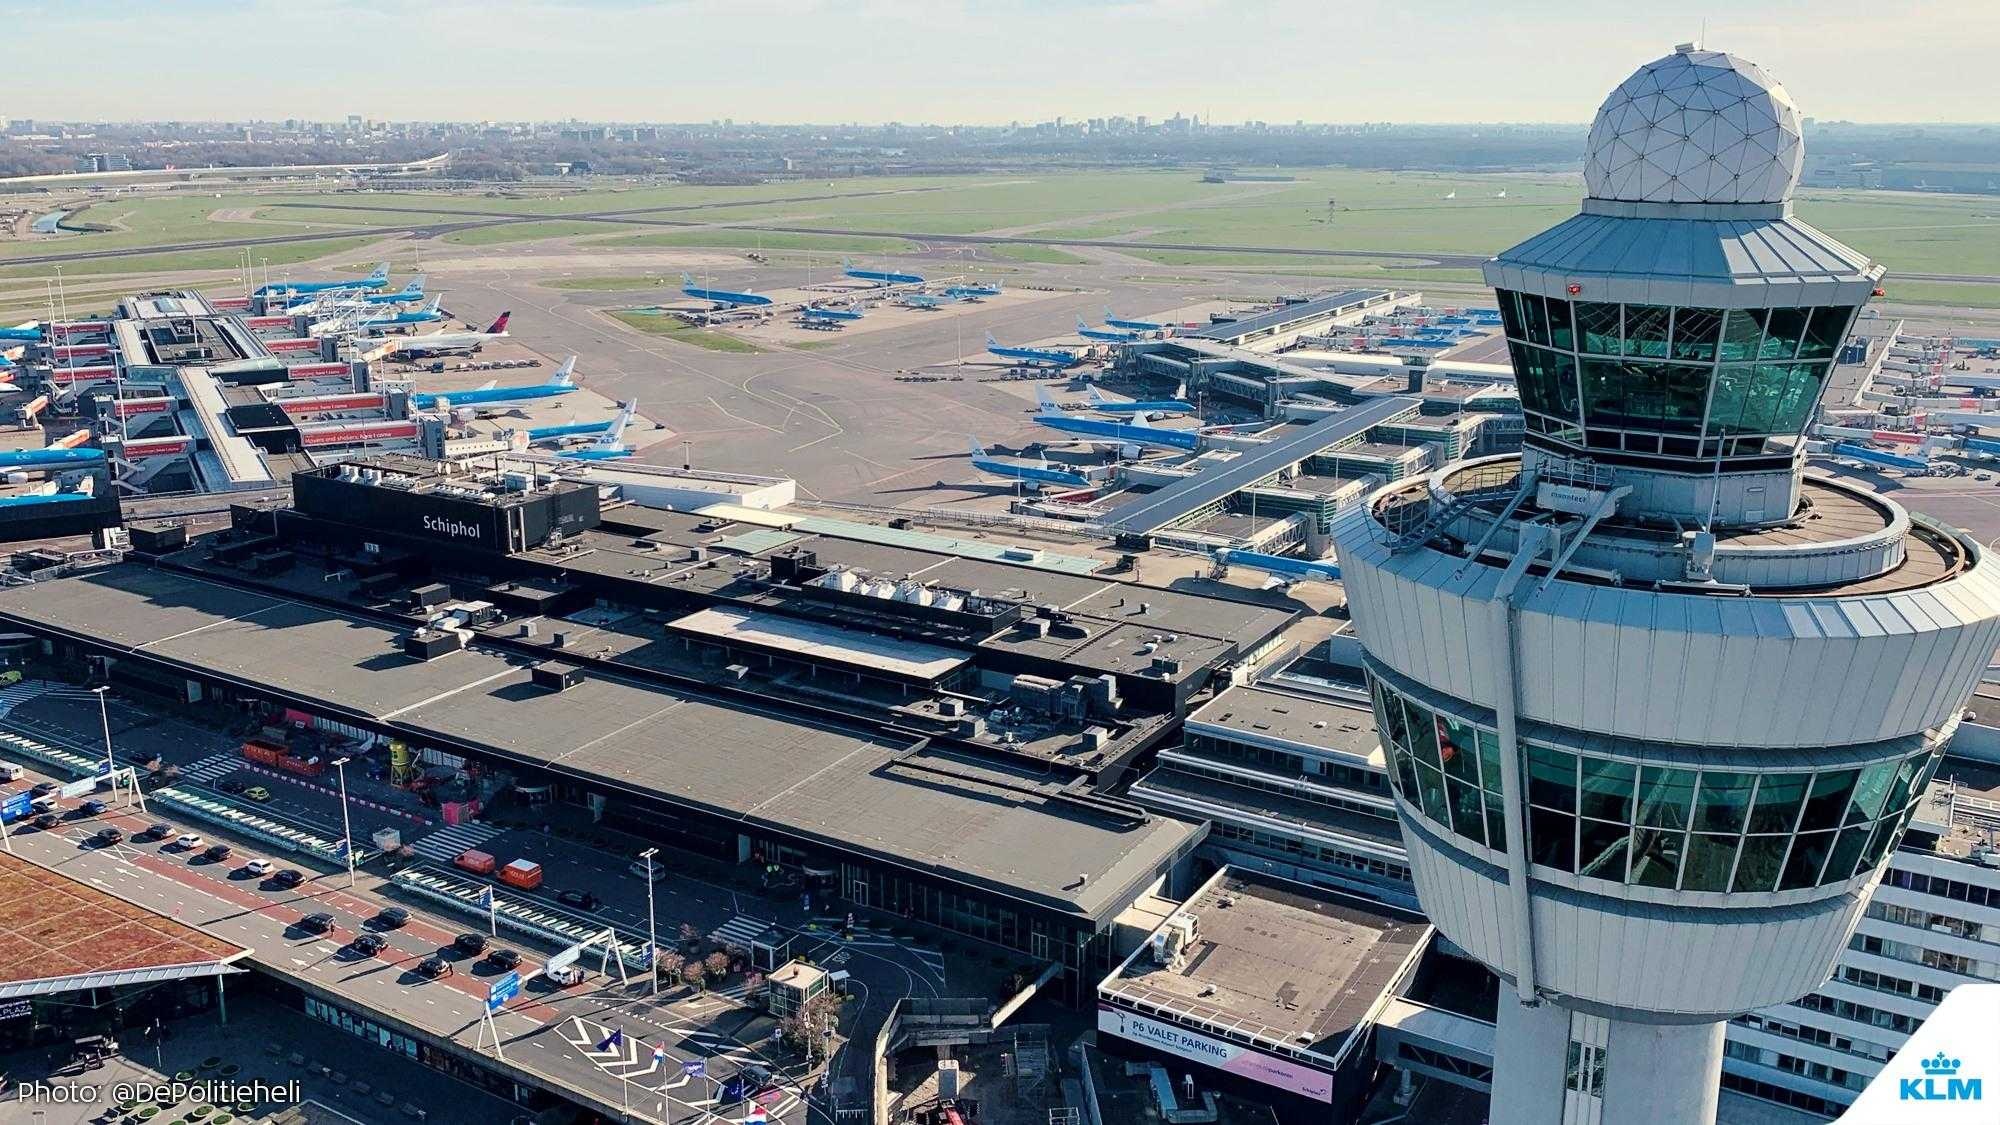 Amsterdam-Schiphol Airport, KLM fleet, Aircraft parking, Amsterdam photography, 2000x1130 HD Desktop